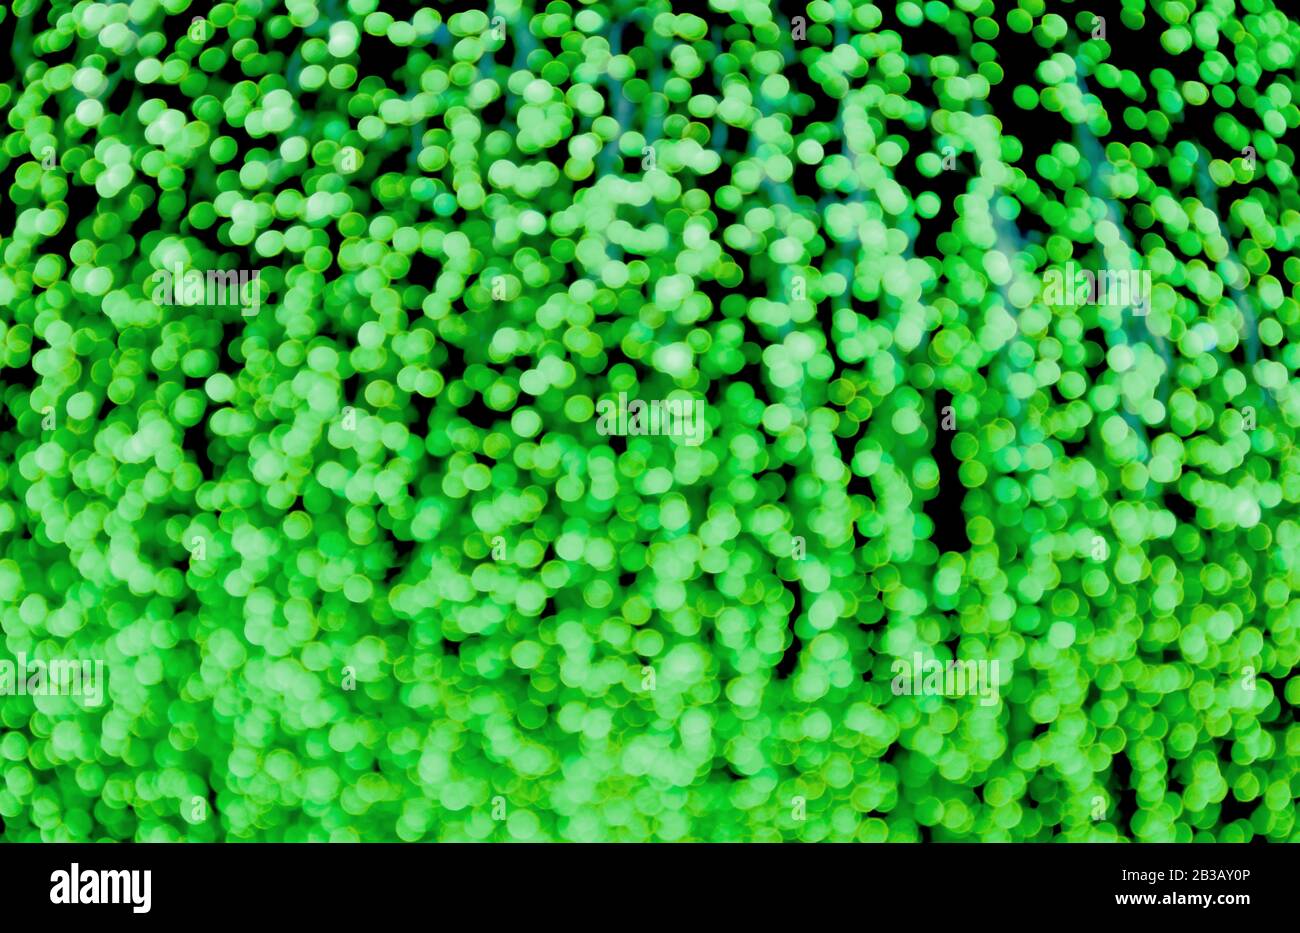 Abstrakte Verschwommene Von Neon Grun Beleuchtete Dekorative Leuchten Fur Hintergrund Oder Hintergrundbilder Stockfotografie Alamy